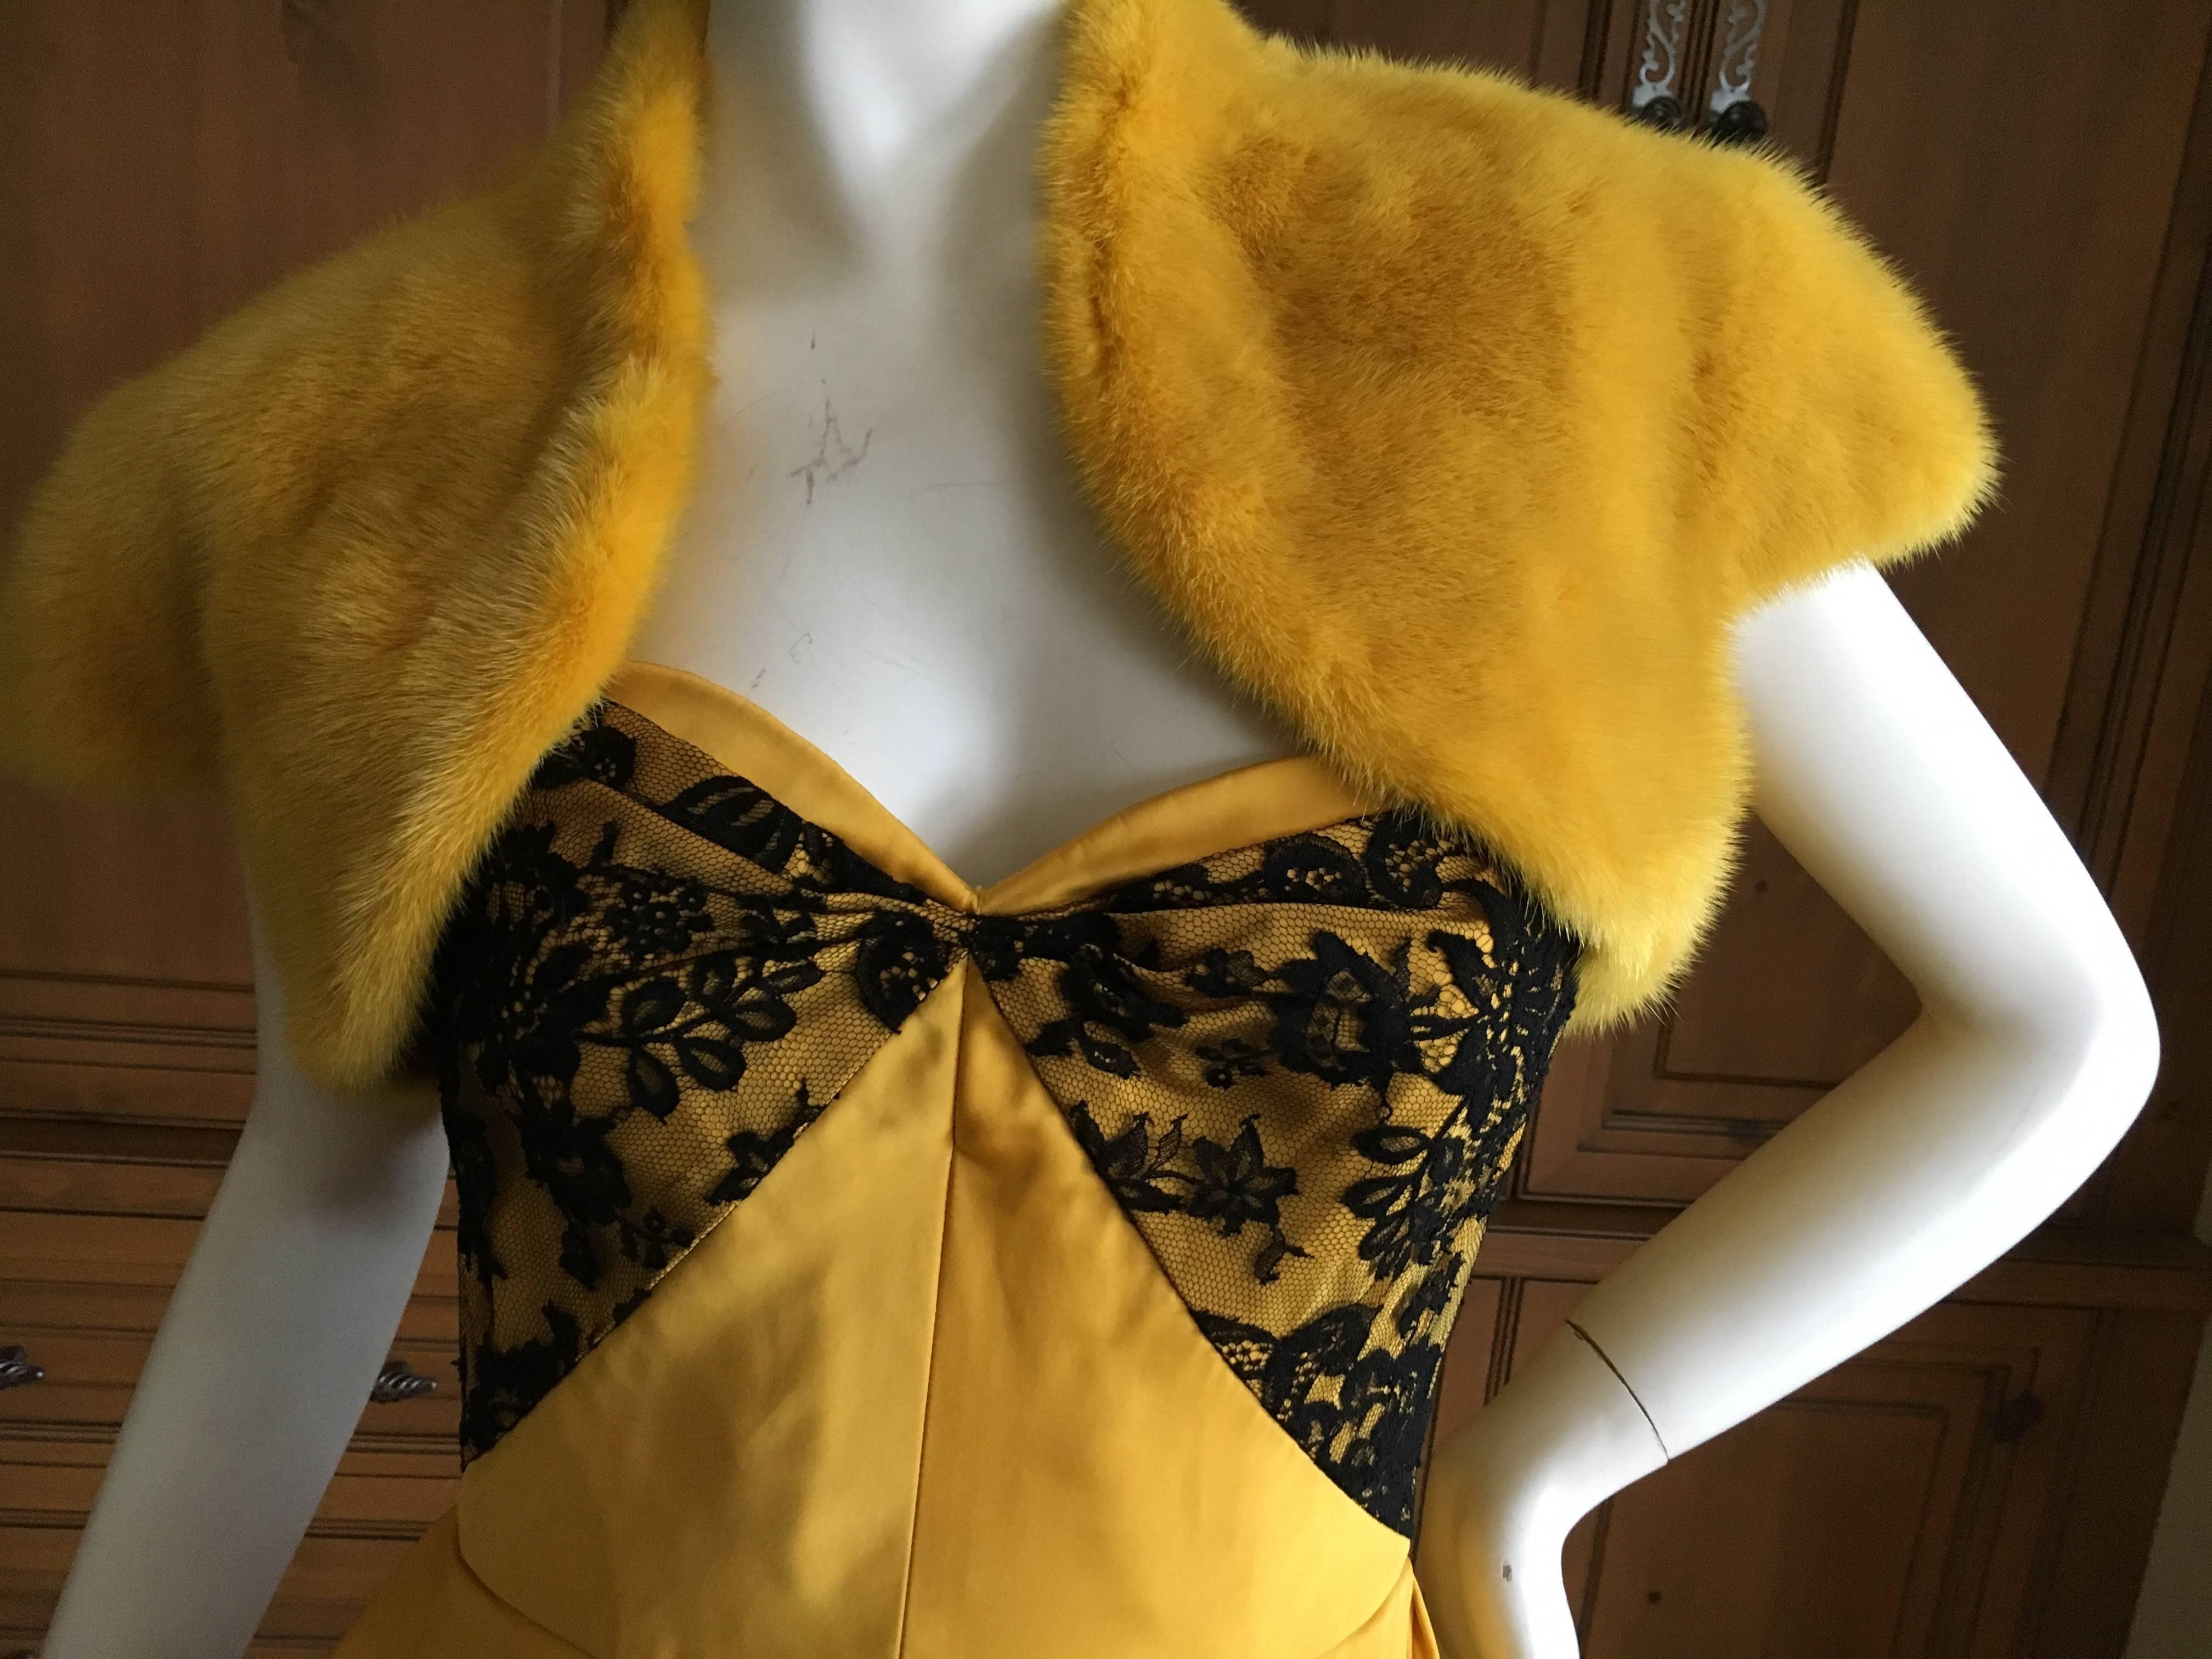 Oscar de la Renta Marigold Floral Strapless Evening Dress with Mink Shrug For Sale 3